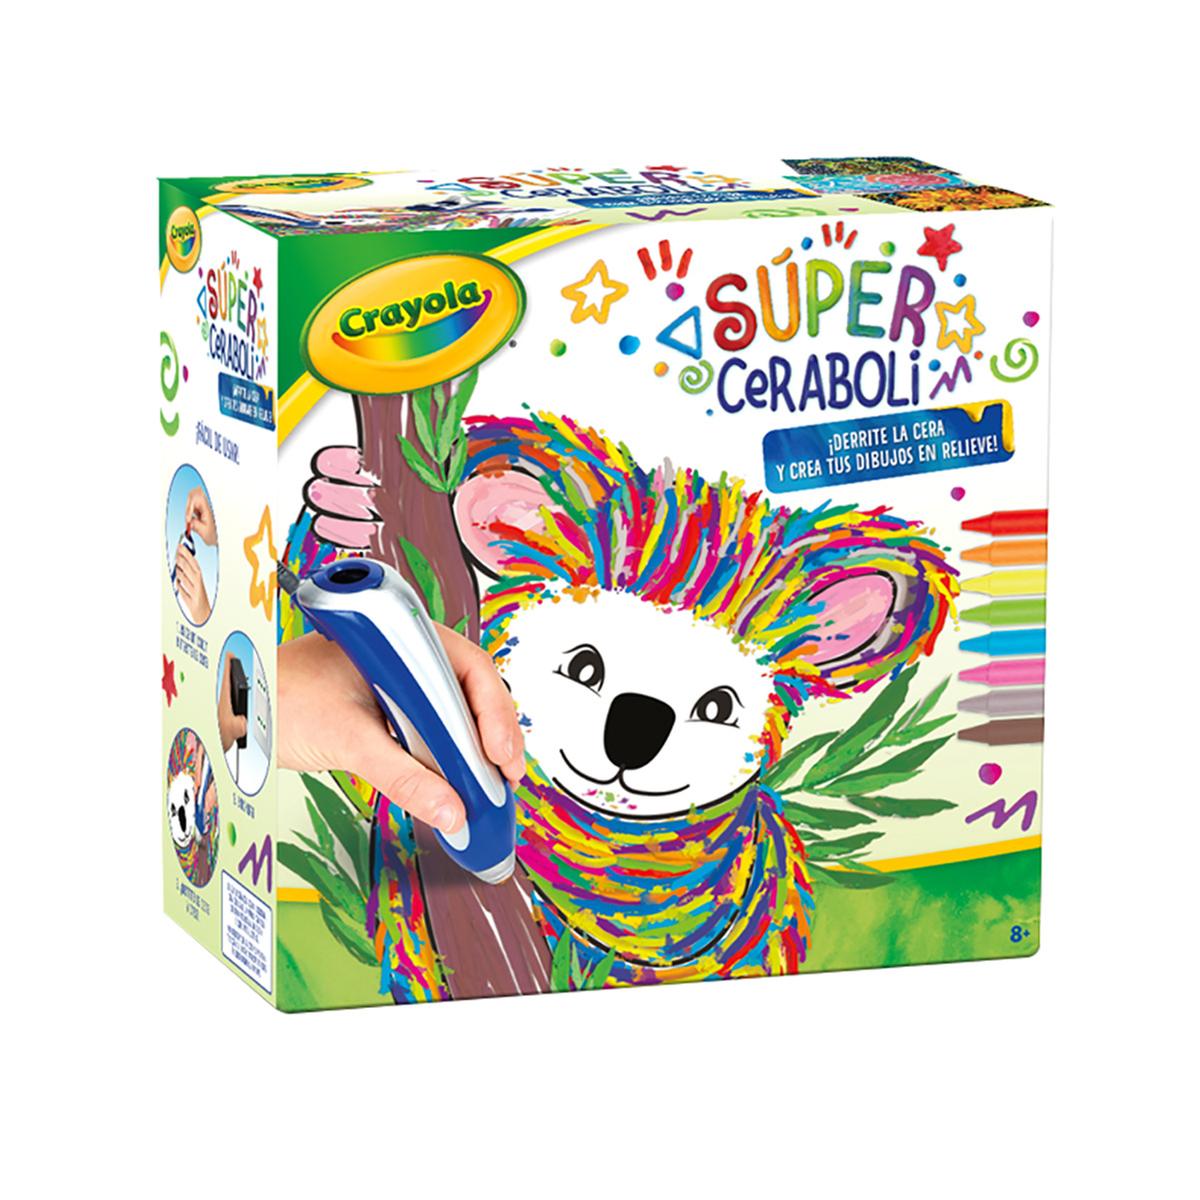 Crayola - Súper Ceraboli Koala | Crayola Actividades | Toys"R"Us España